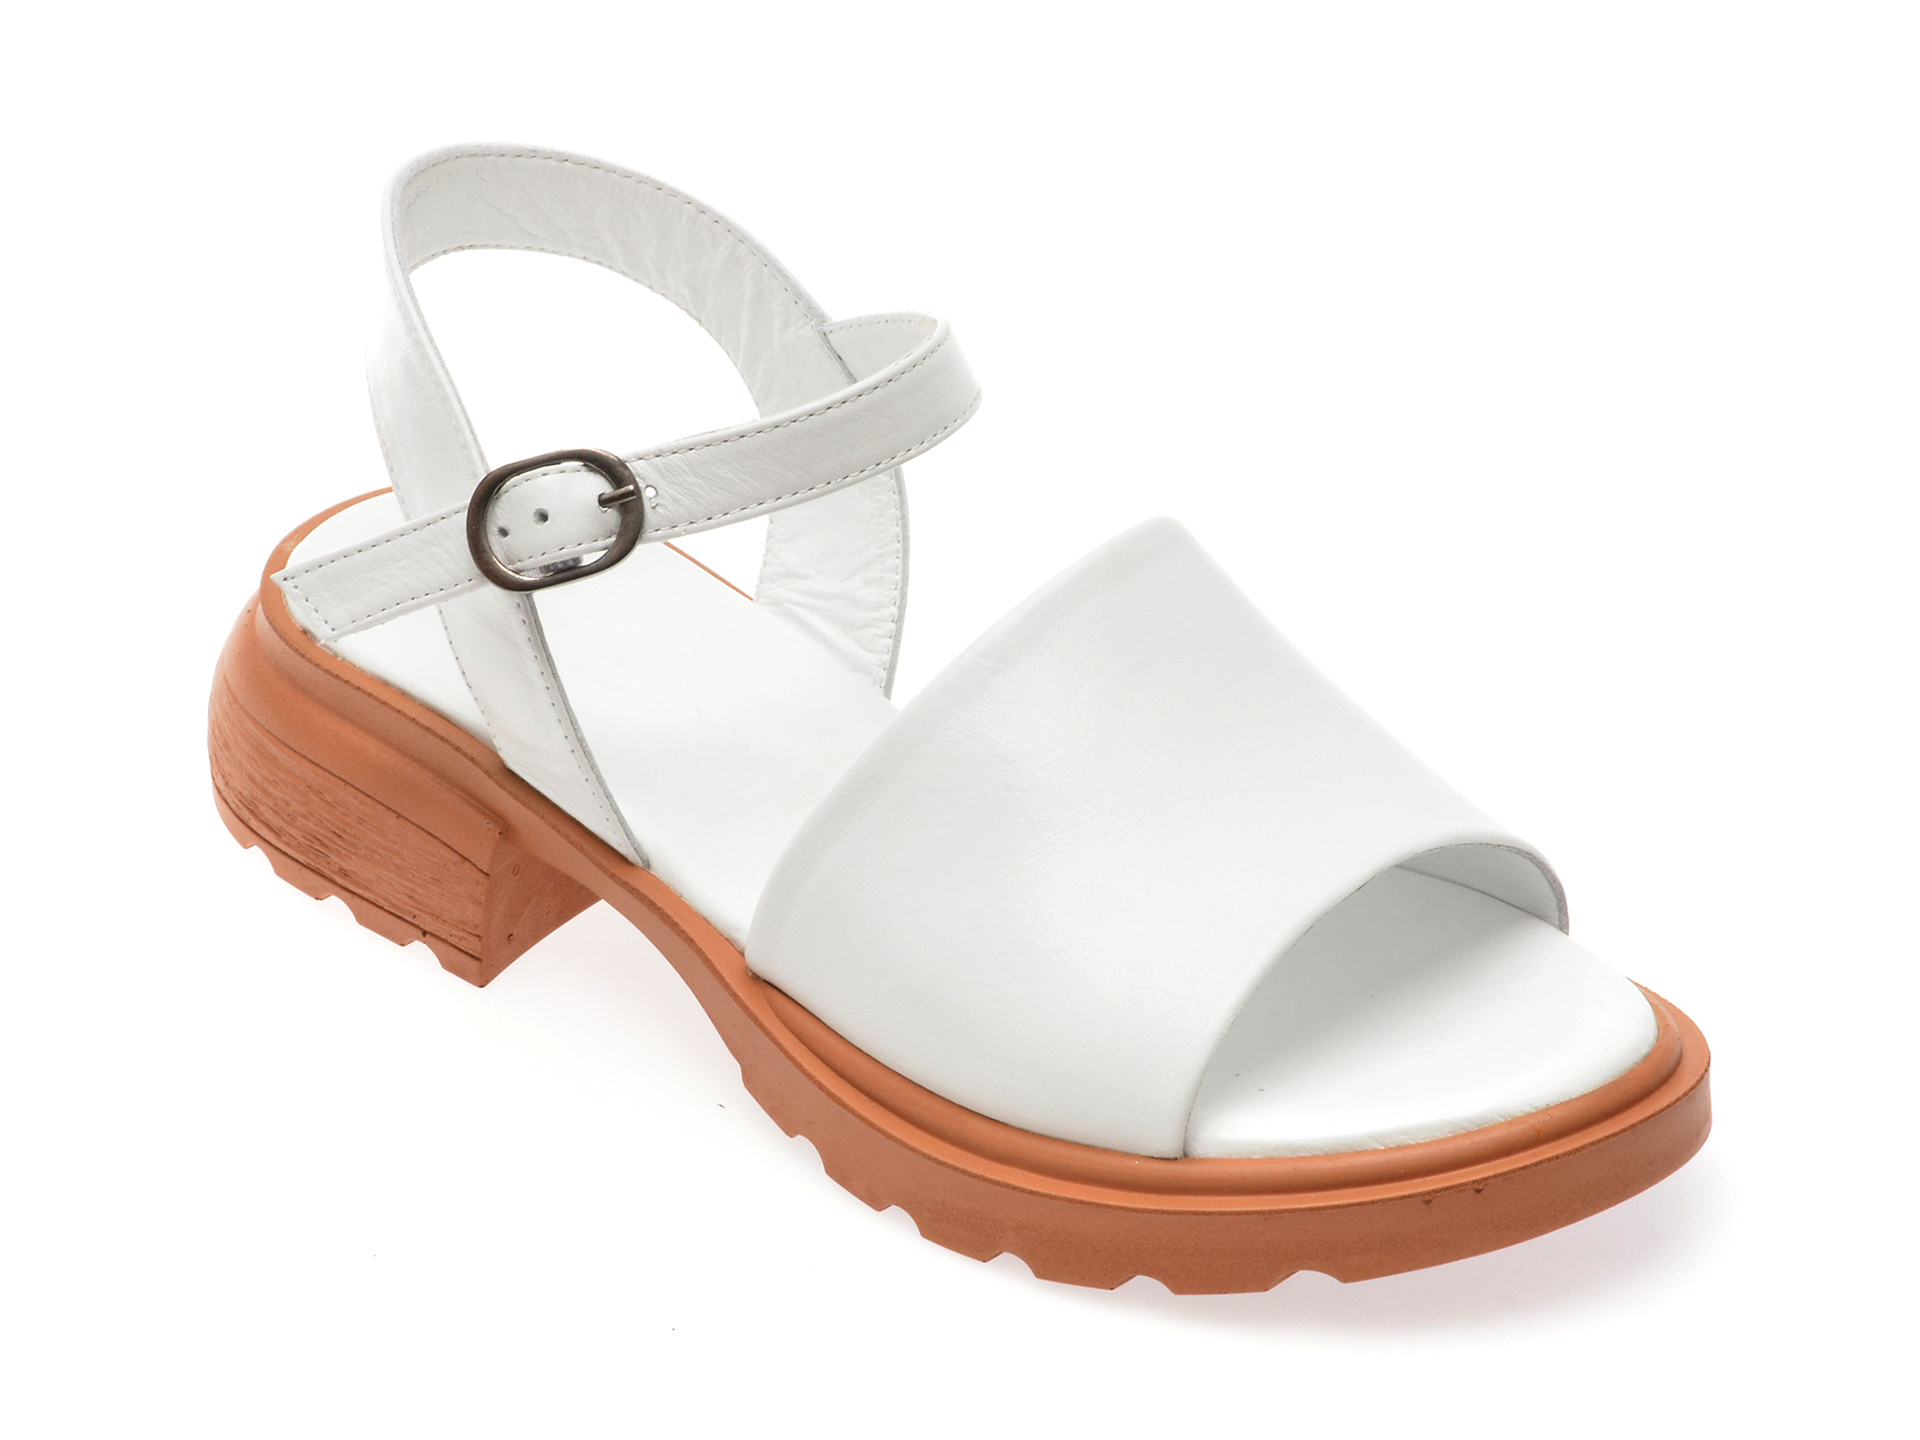 Sandale casual FLAVIA PASSINI albe, 3471099, din piele naturala